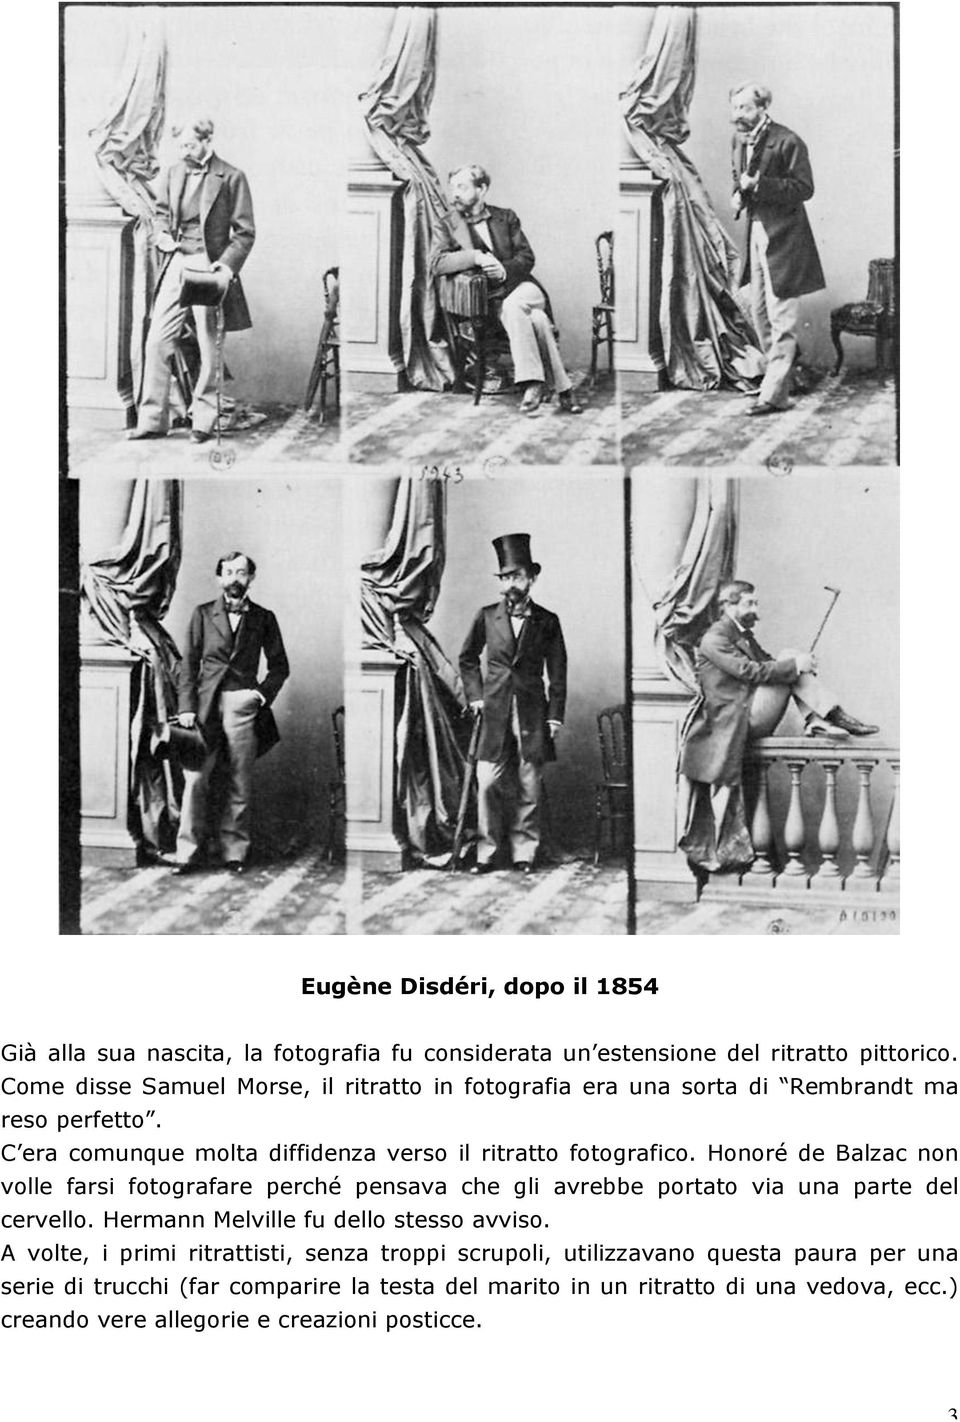 Honoré de Balzac non volle farsi fotografare perché pensava che gli avrebbe portato via una parte del cervello. Hermann Melville fu dello stesso avviso.